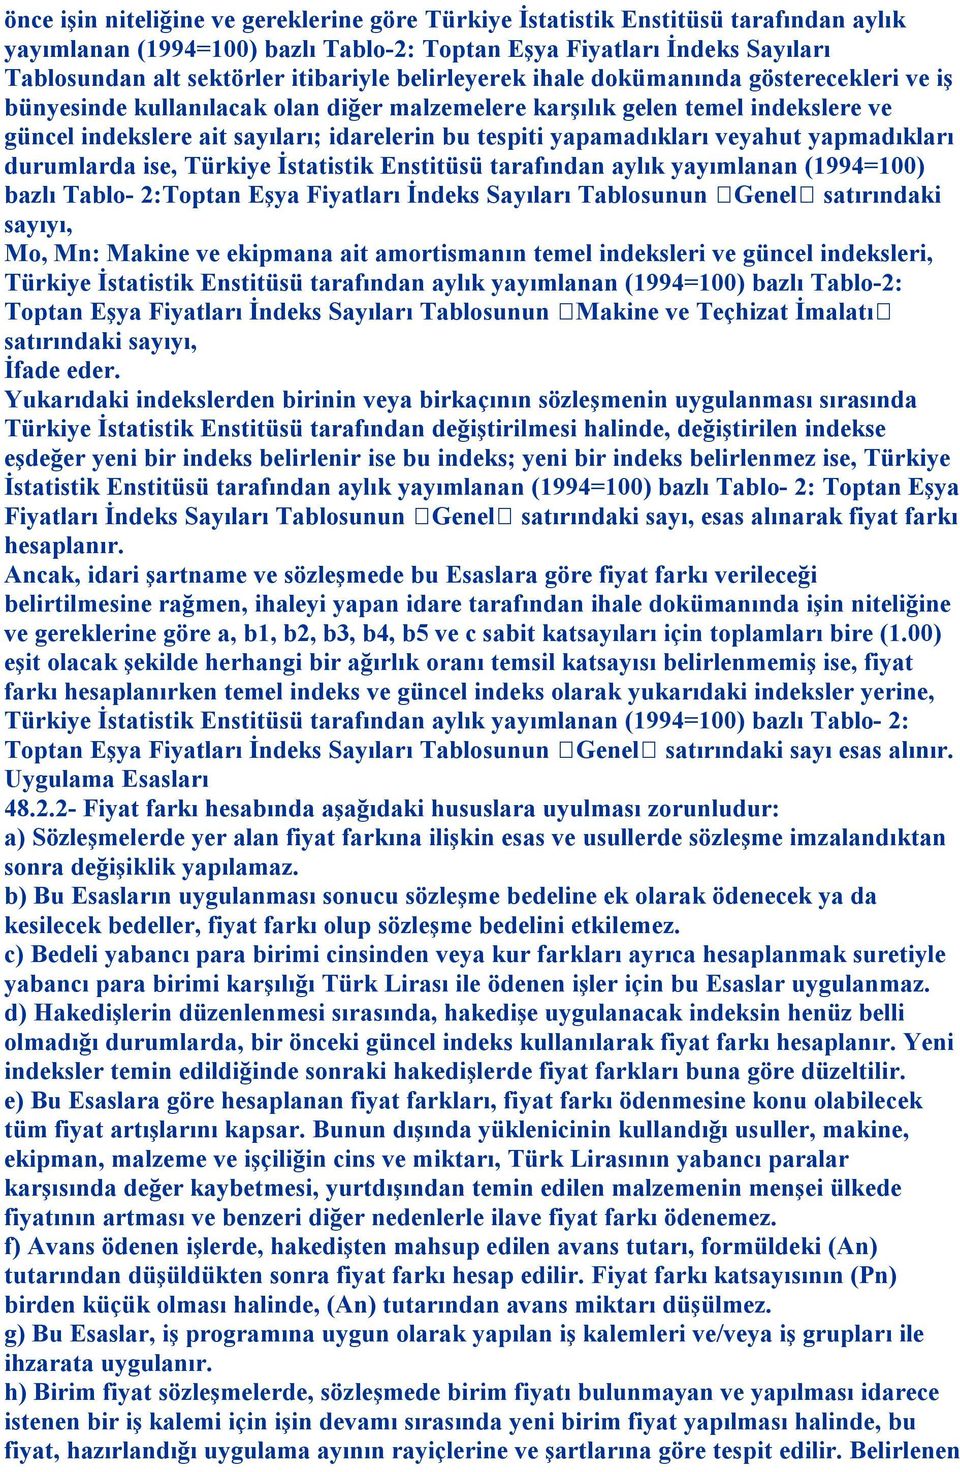 yapamadıkları veyahut yapmadıkları durumlarda ise, Türkiye İstatistik Enstitüsü tarafından aylık yayımlanan (1994=100) bazlı Tablo- 2:Toptan Eşya Fiyatları İndeks Sayıları Tablosunun Genel